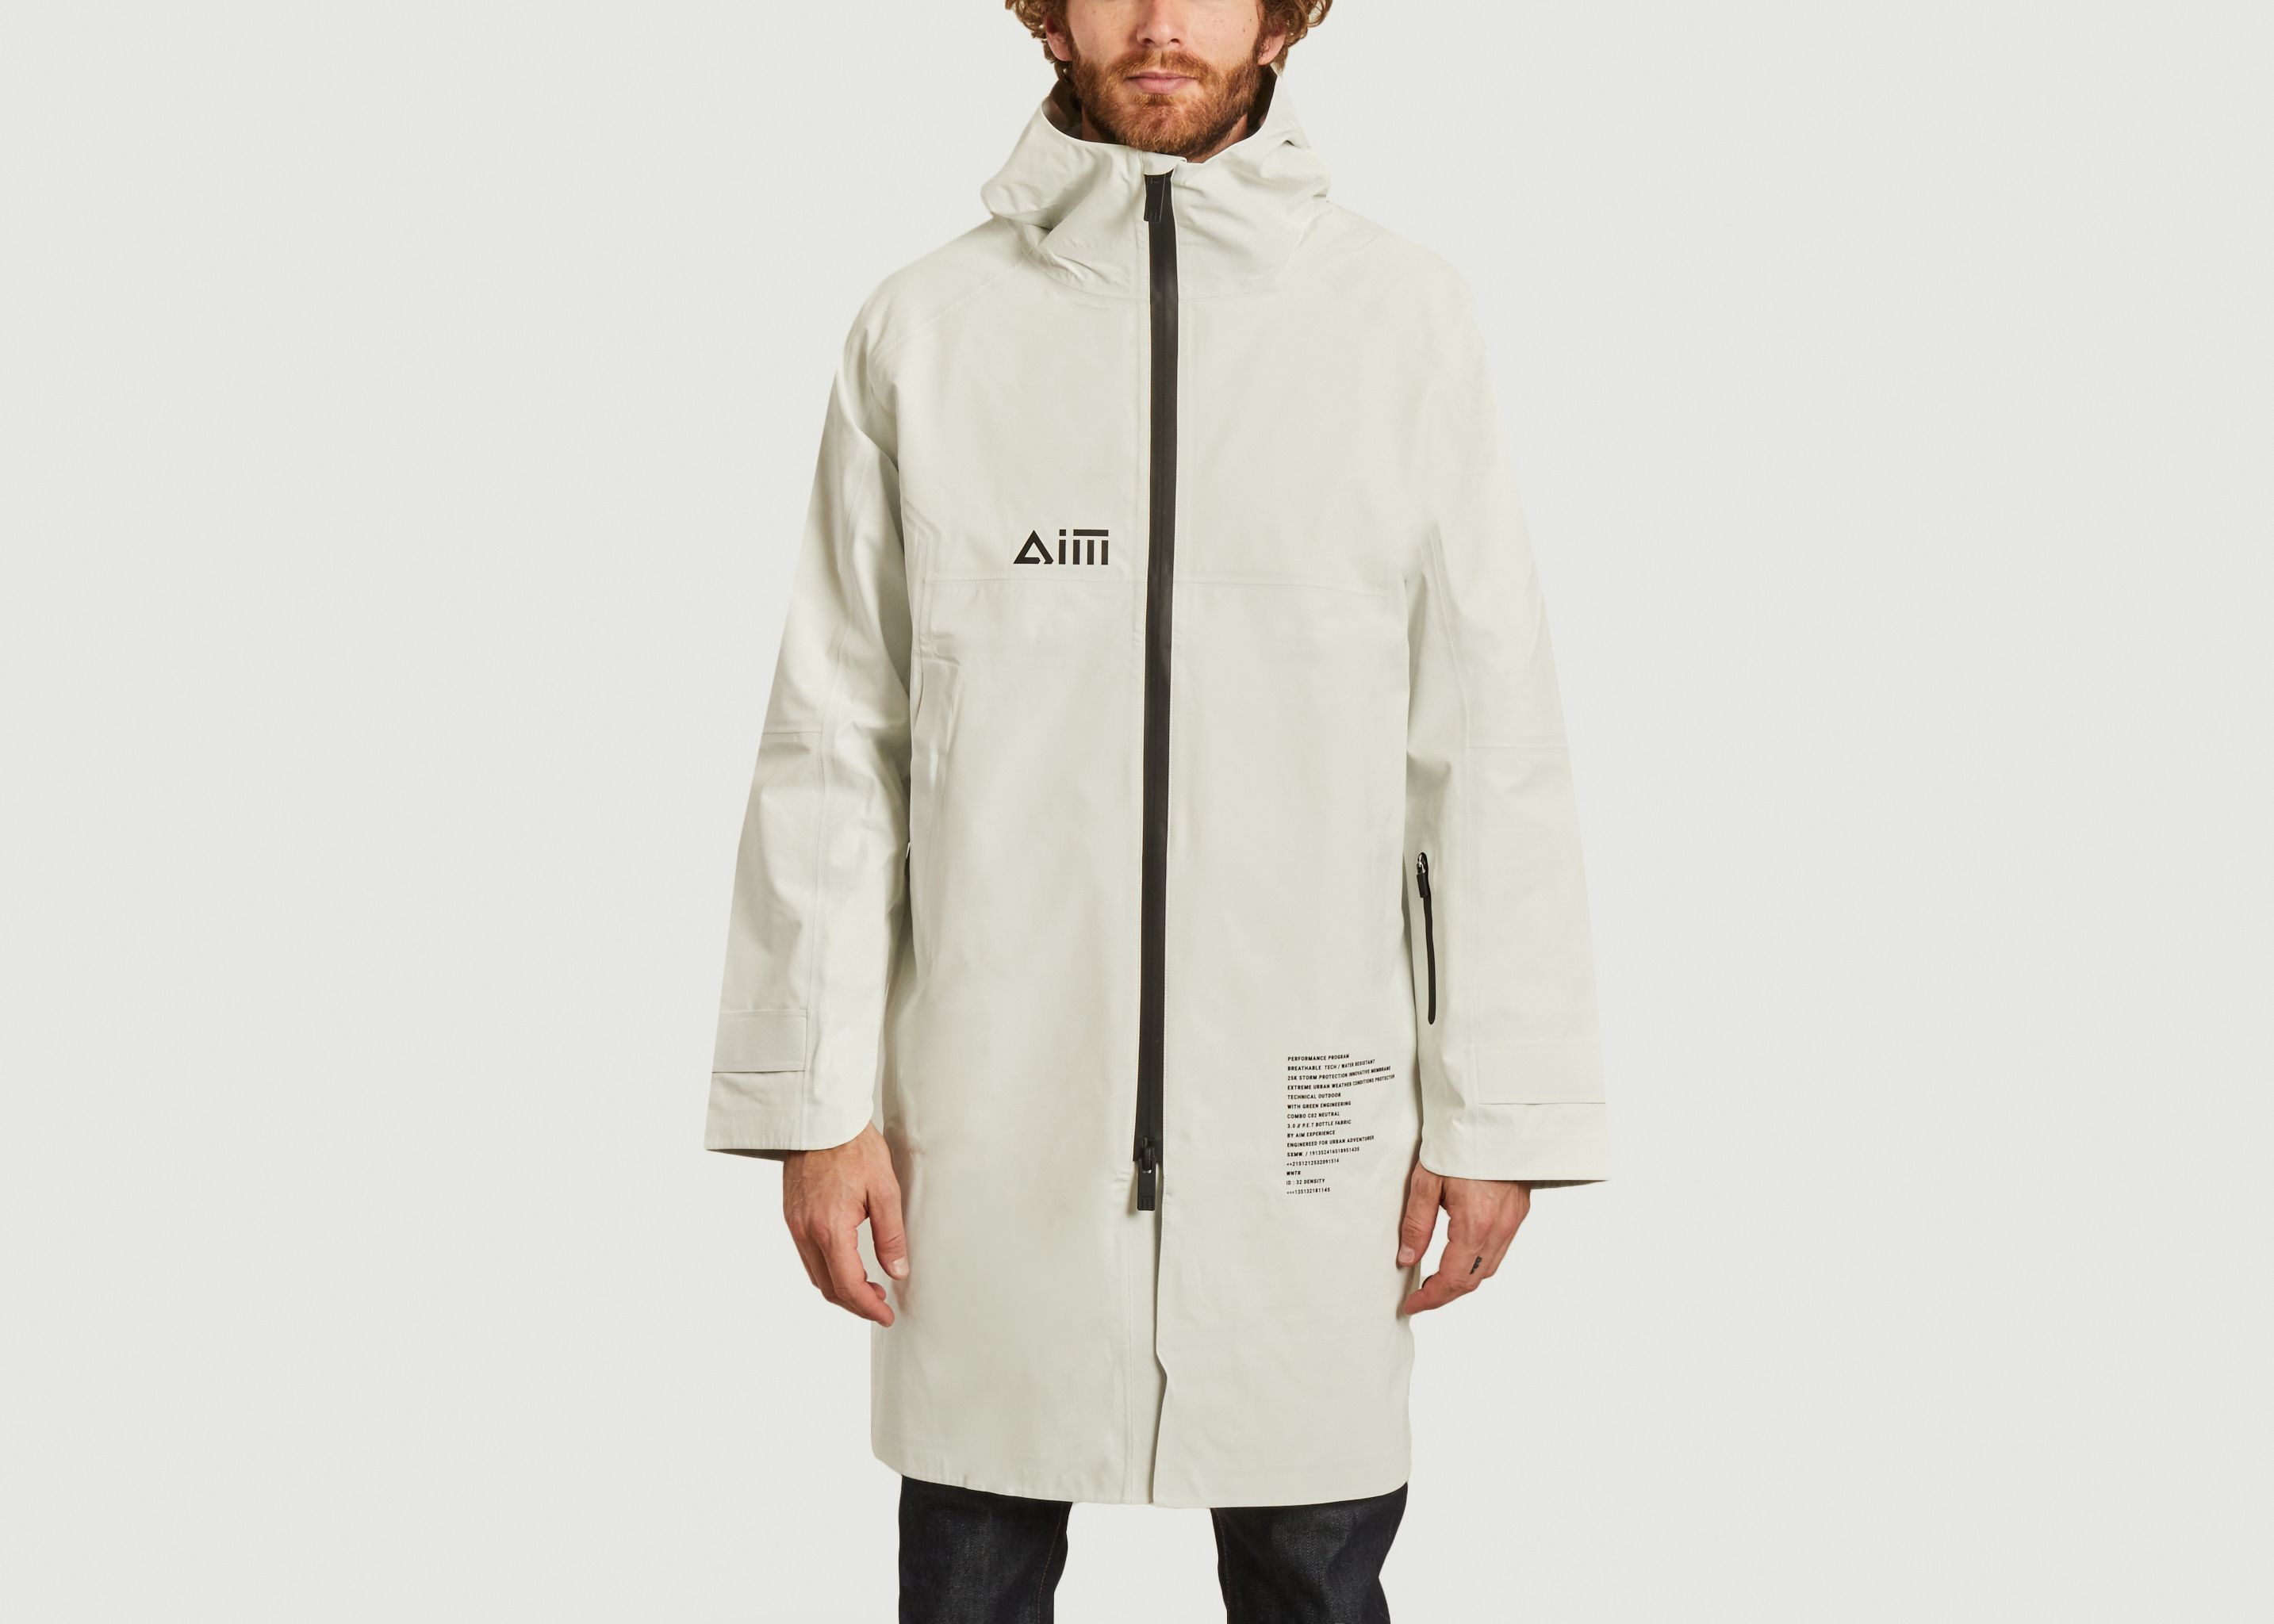 Waterproof jacket - AIM Experience